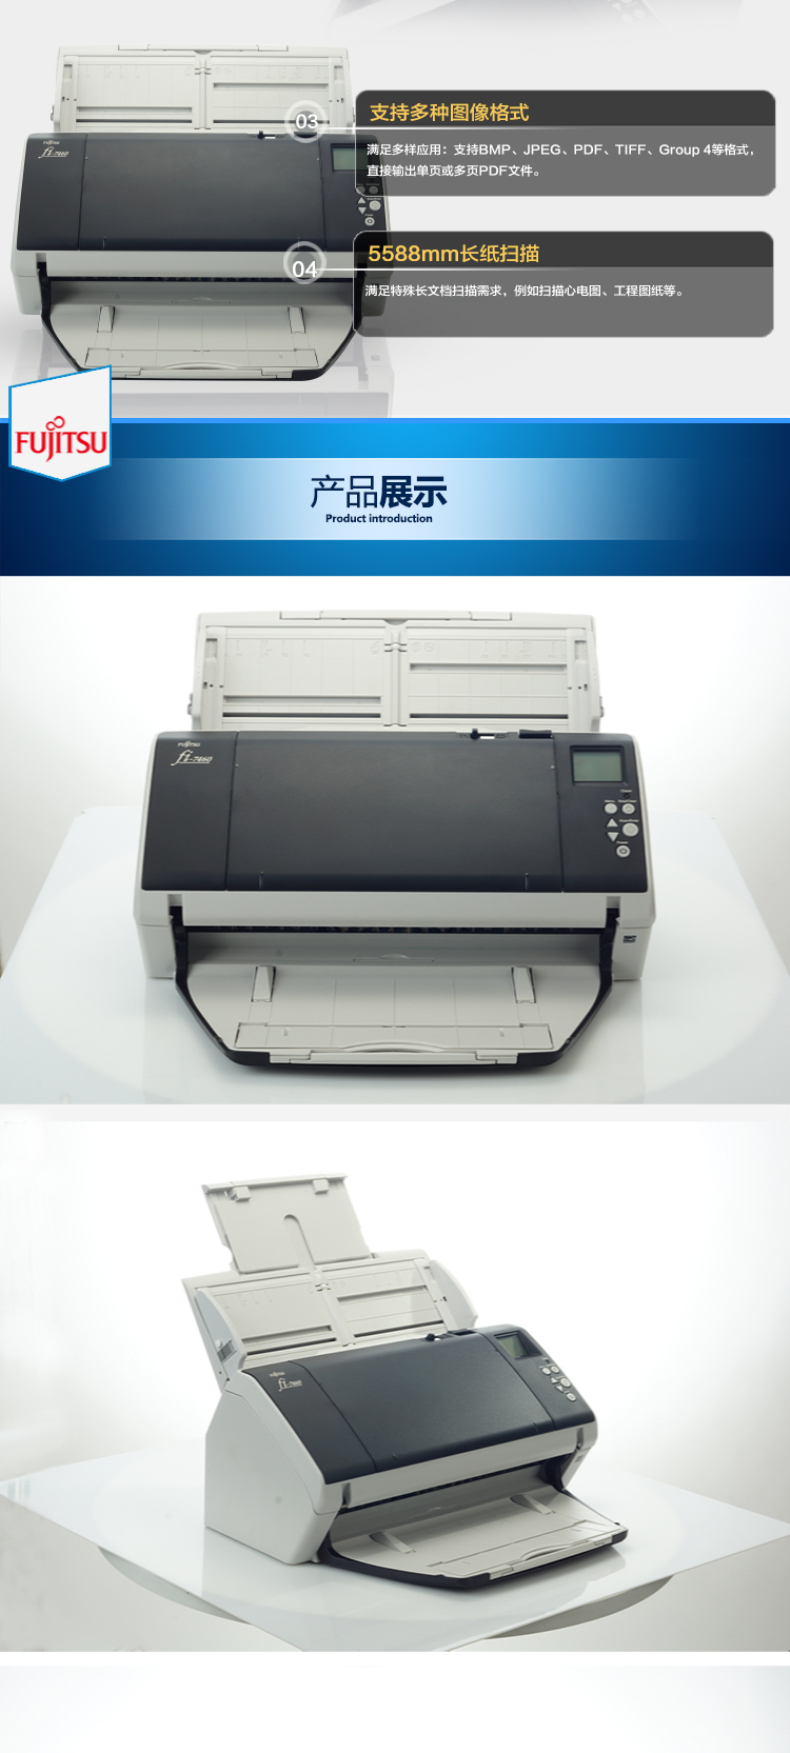 富士通 FUJITSU A3高速双面馈纸式扫描仪 Fi-7460 